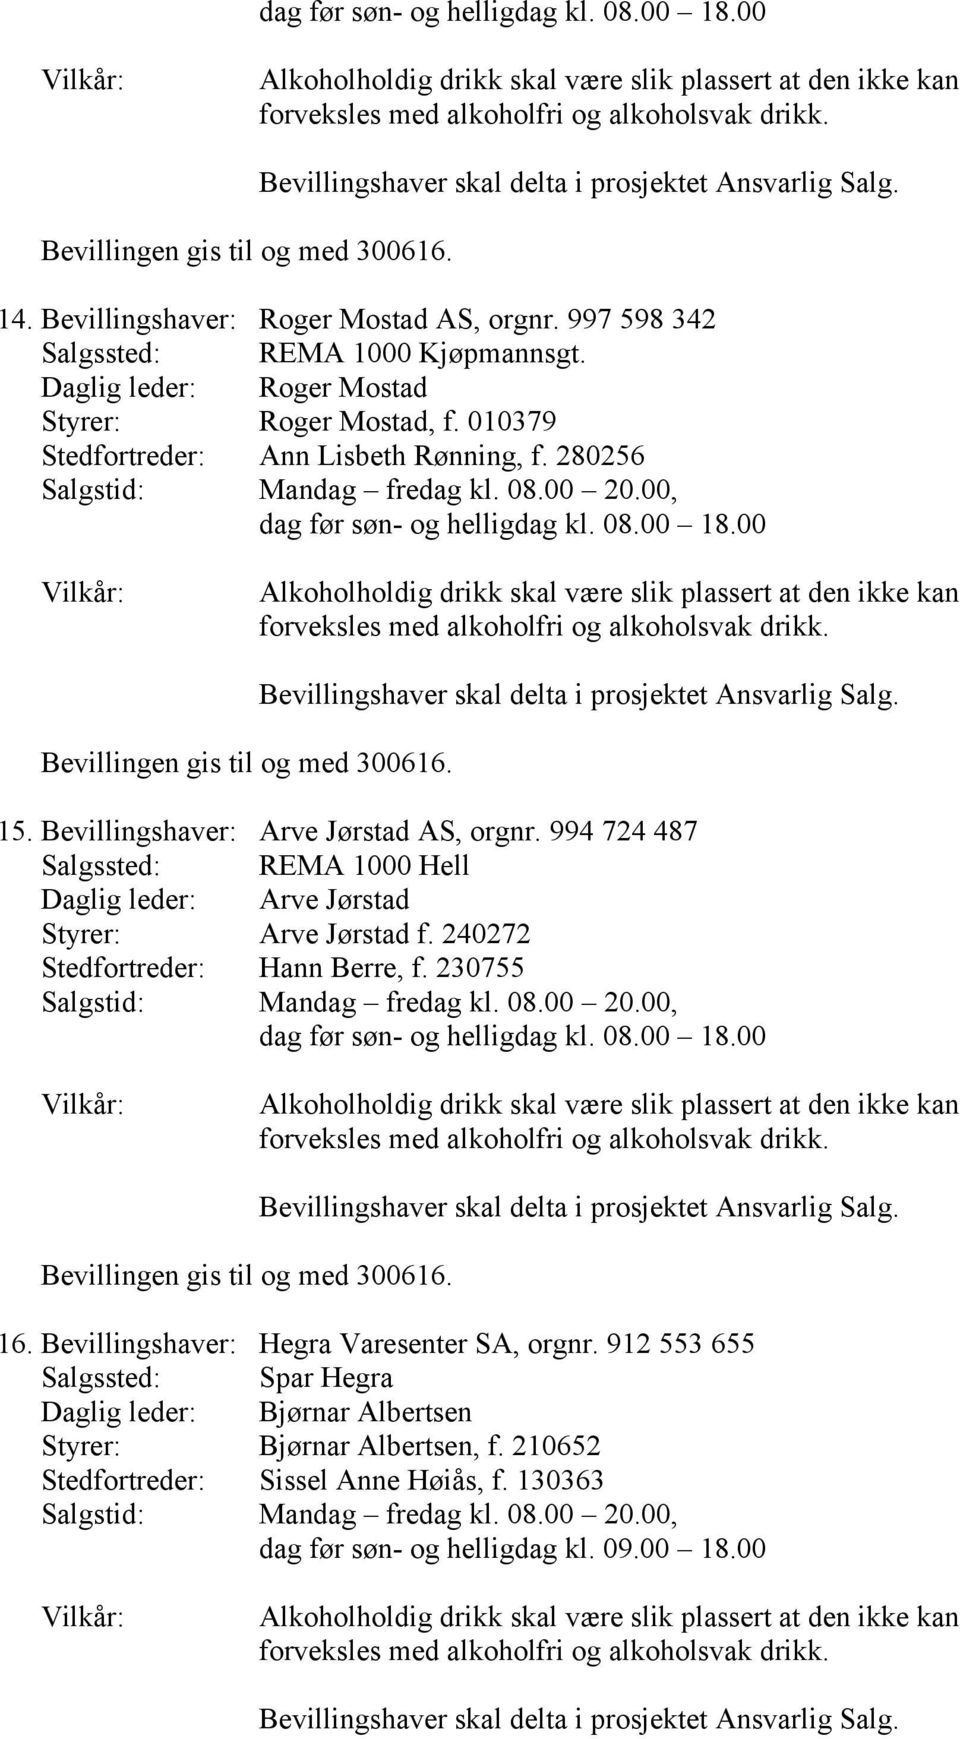 994 724 487 Salgssted: REMA 1000 Hell Daglig leder: Arve Jørstad Styrer: Arve Jørstad f. 240272 Stedfortreder: Hann Berre, f. 230755 16.